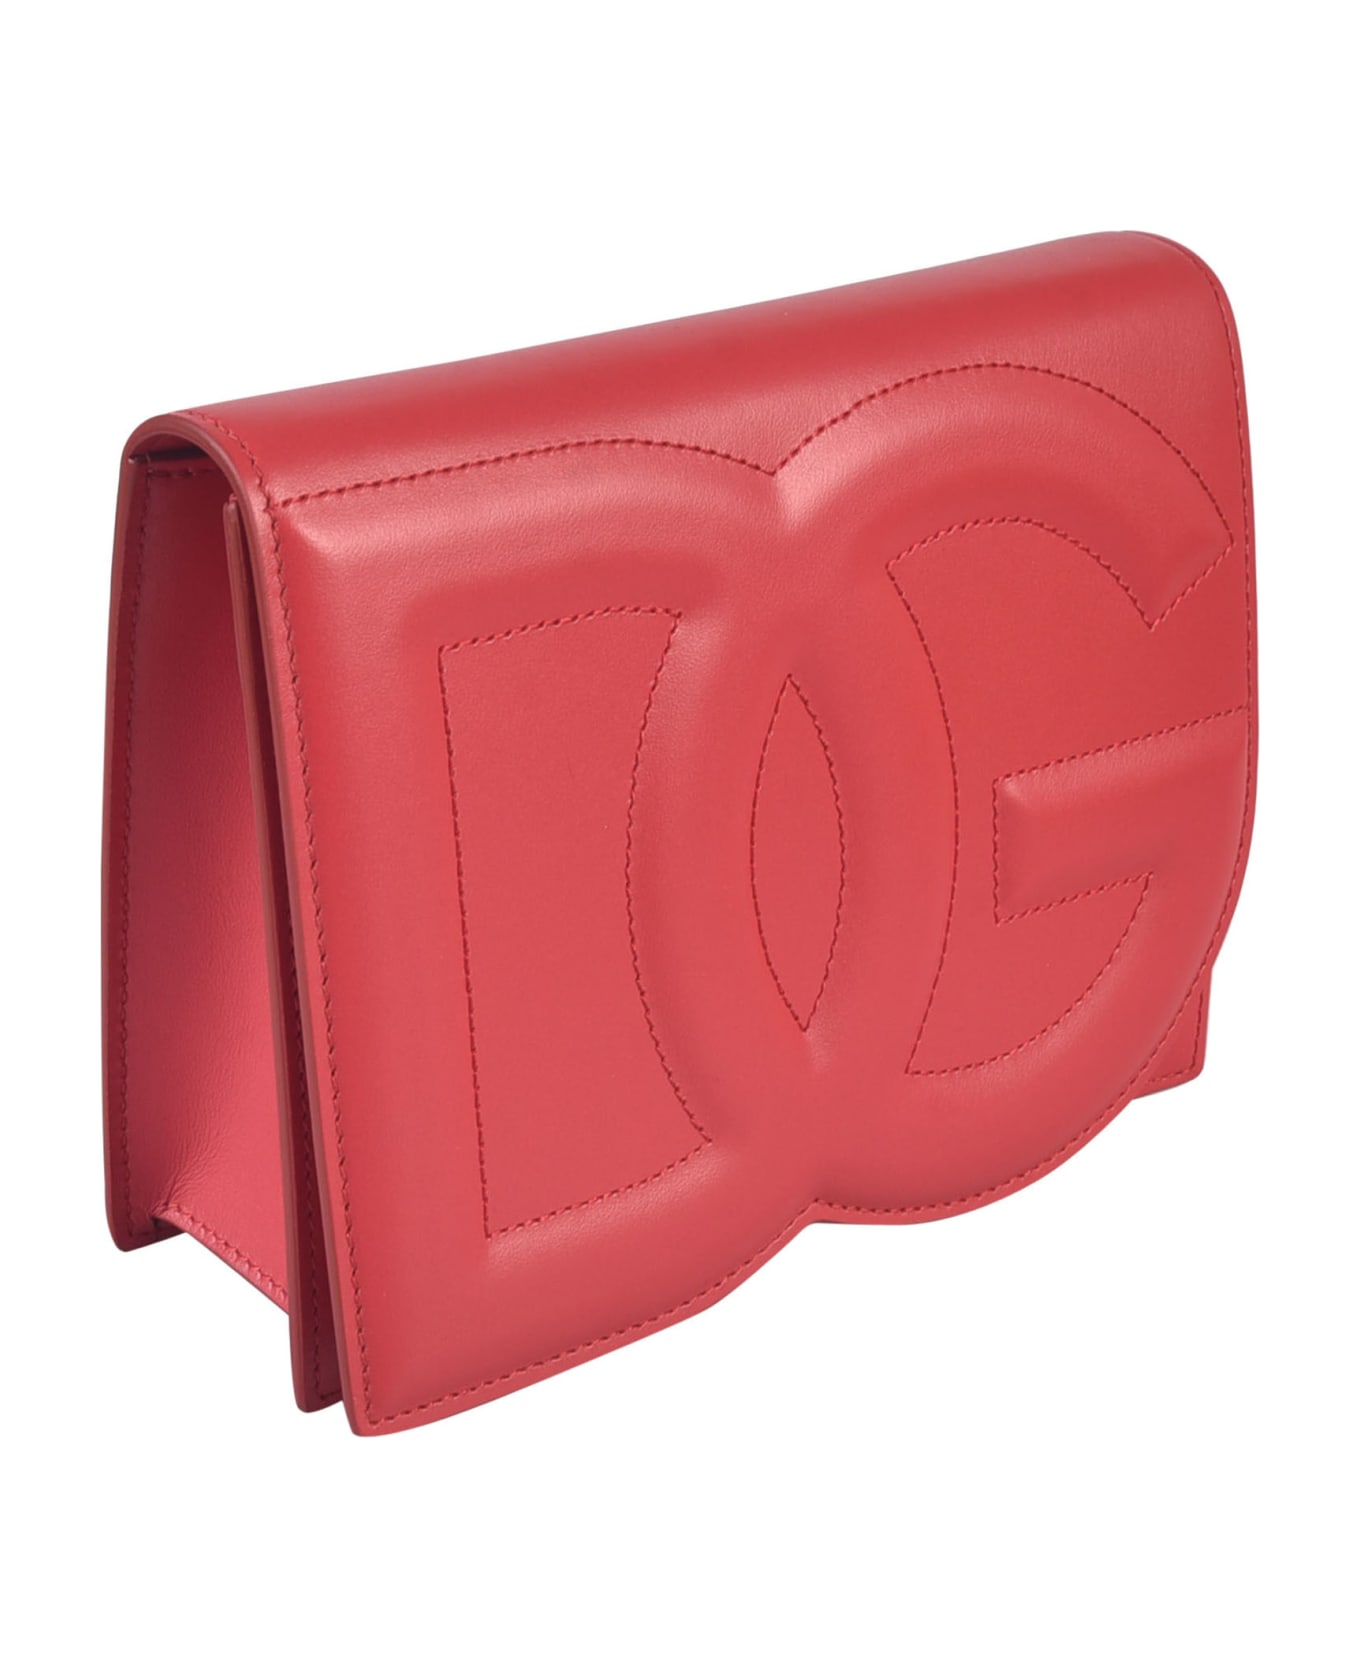 Dolce & Gabbana Leather Shoulder Bag - Red